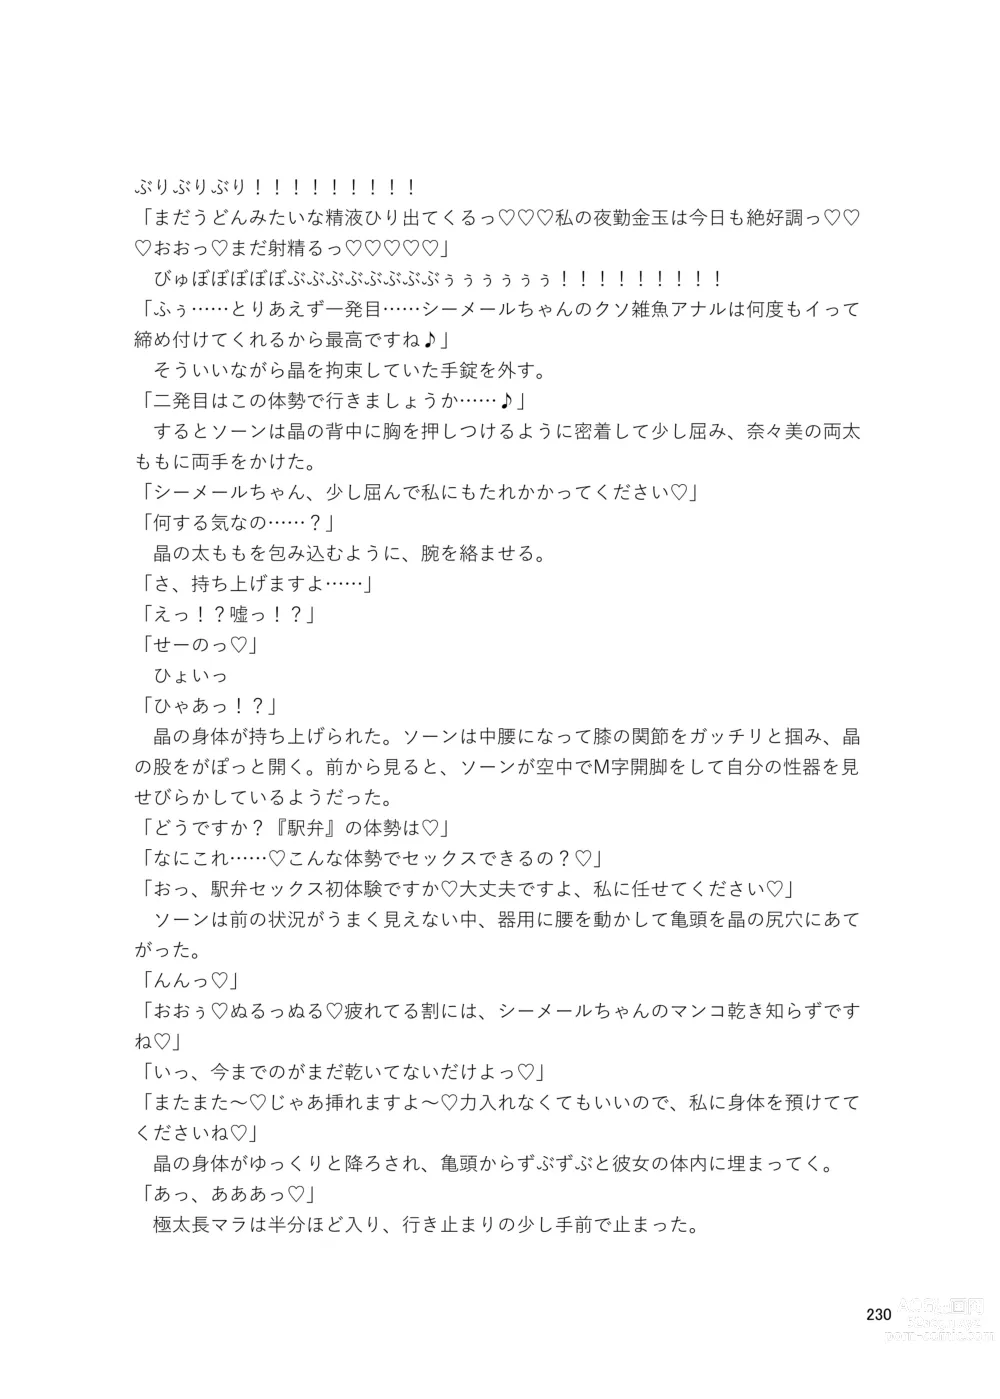 Page 230 of doujinshi Shemale & Mesu Danshi Goudoushi Cs HAVEN 3 Rod